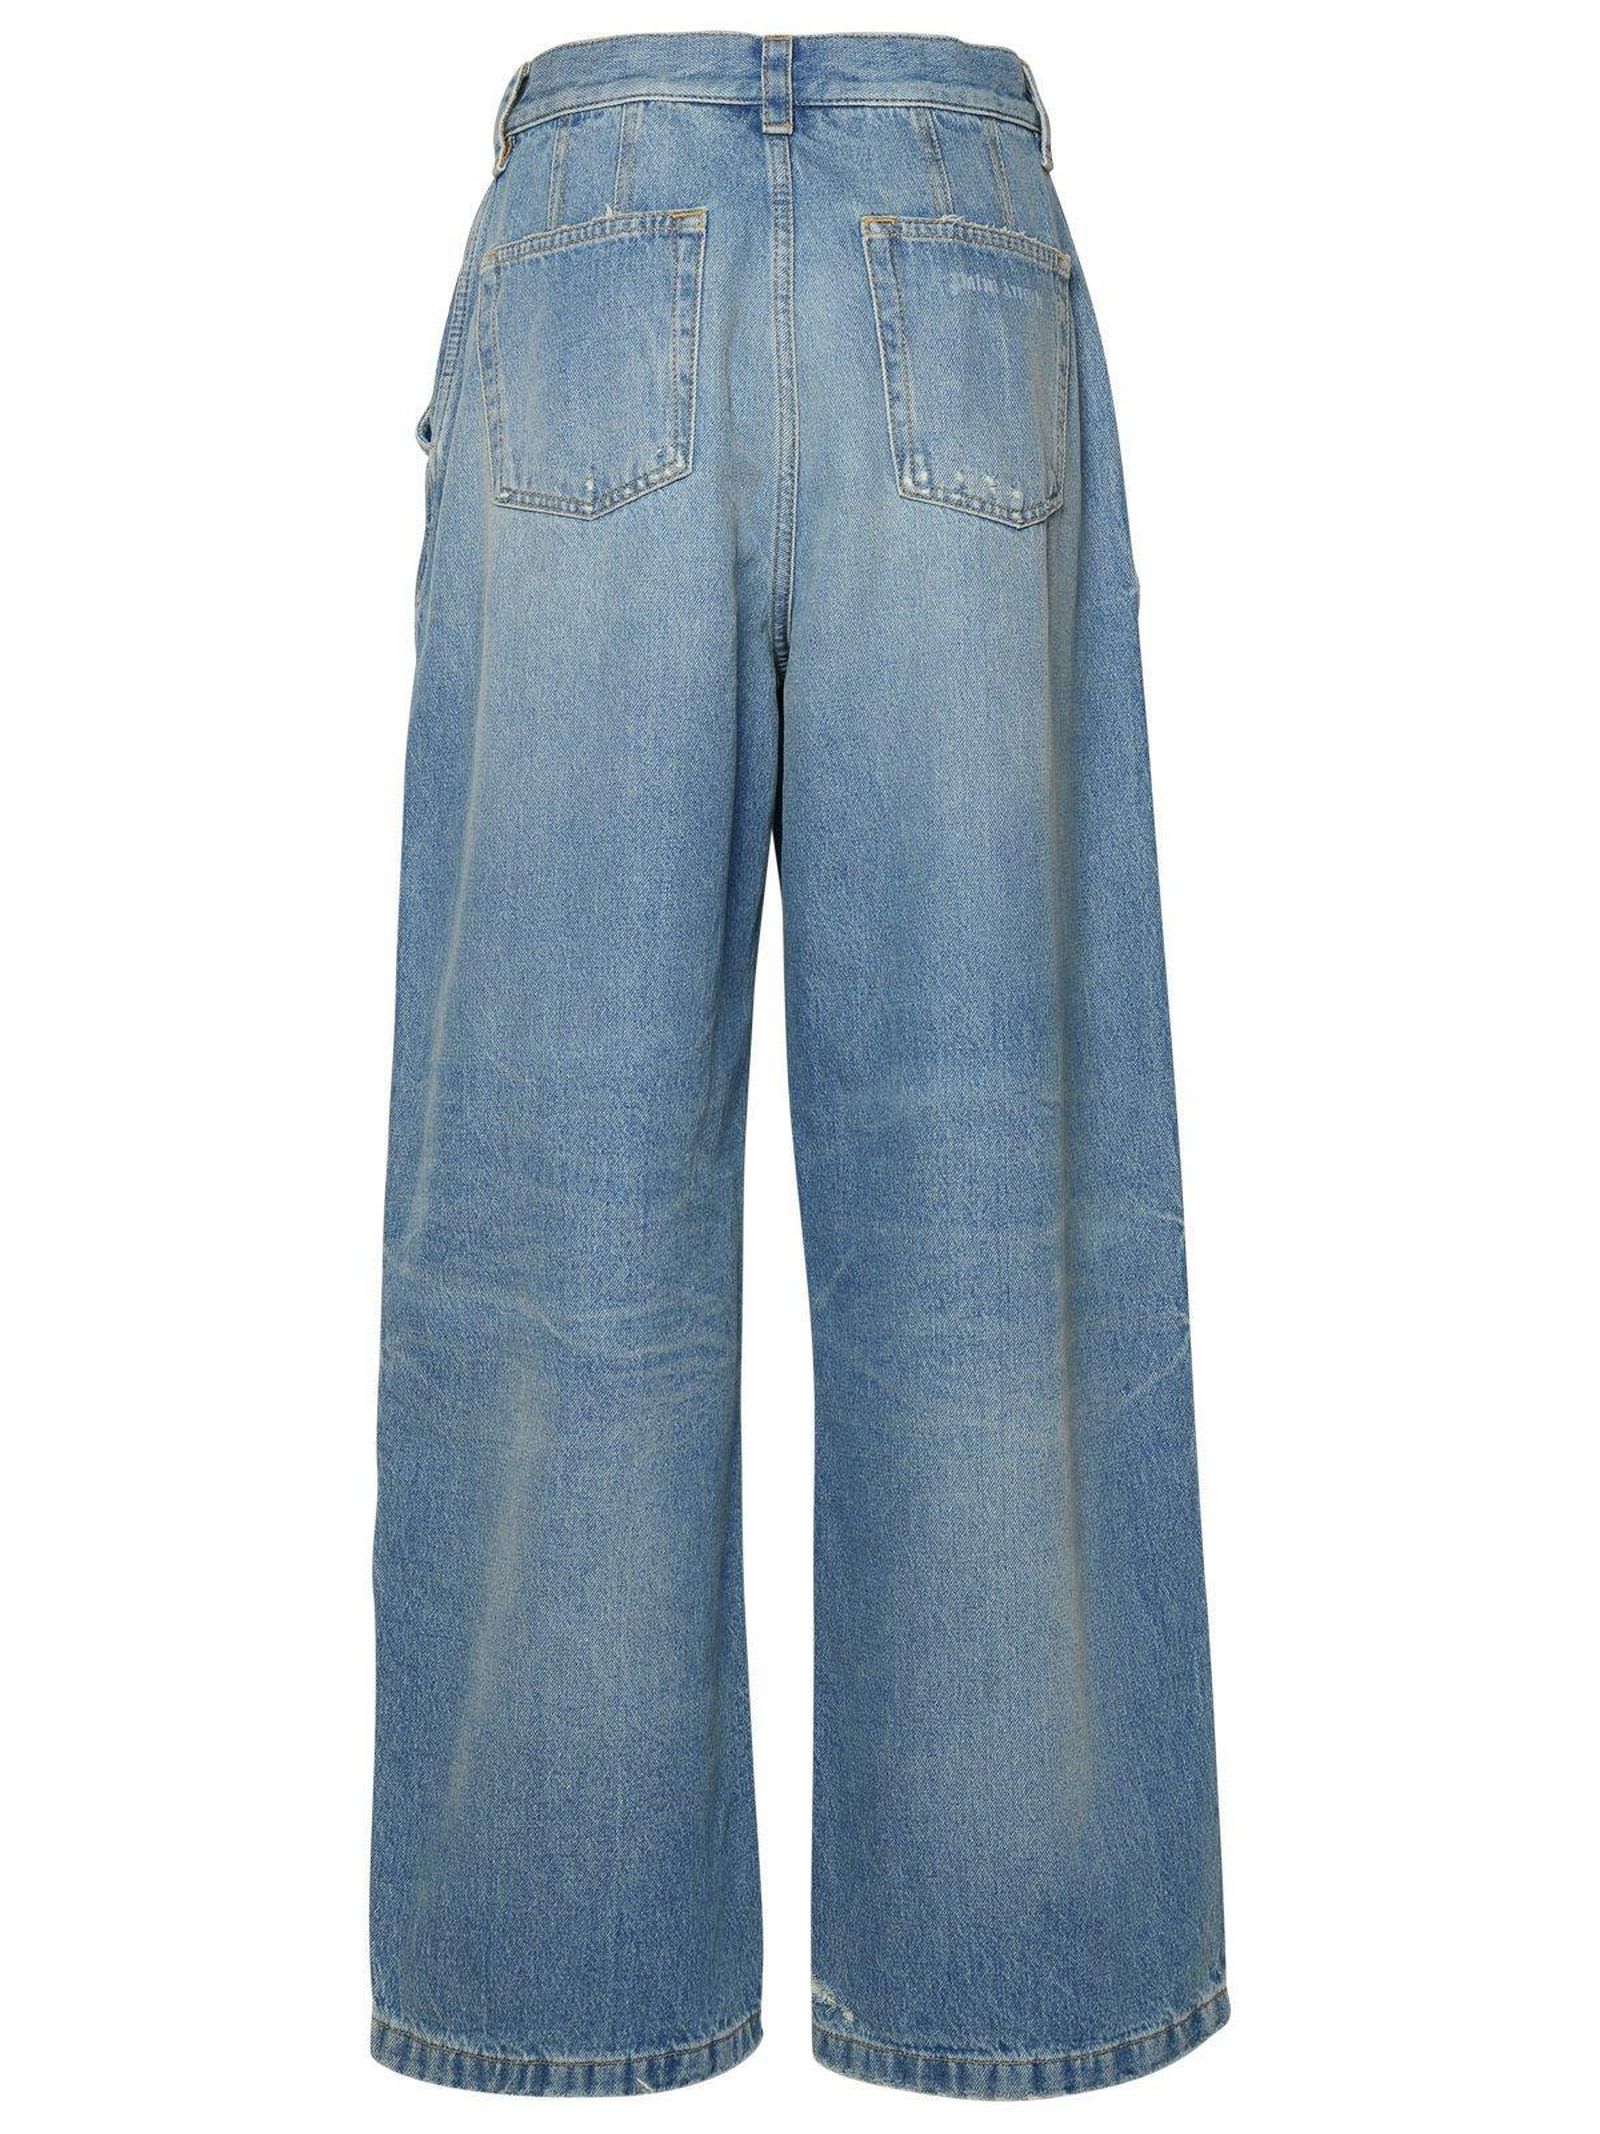 Shop Palm Angels Light Blue Cotton Denim Jeans